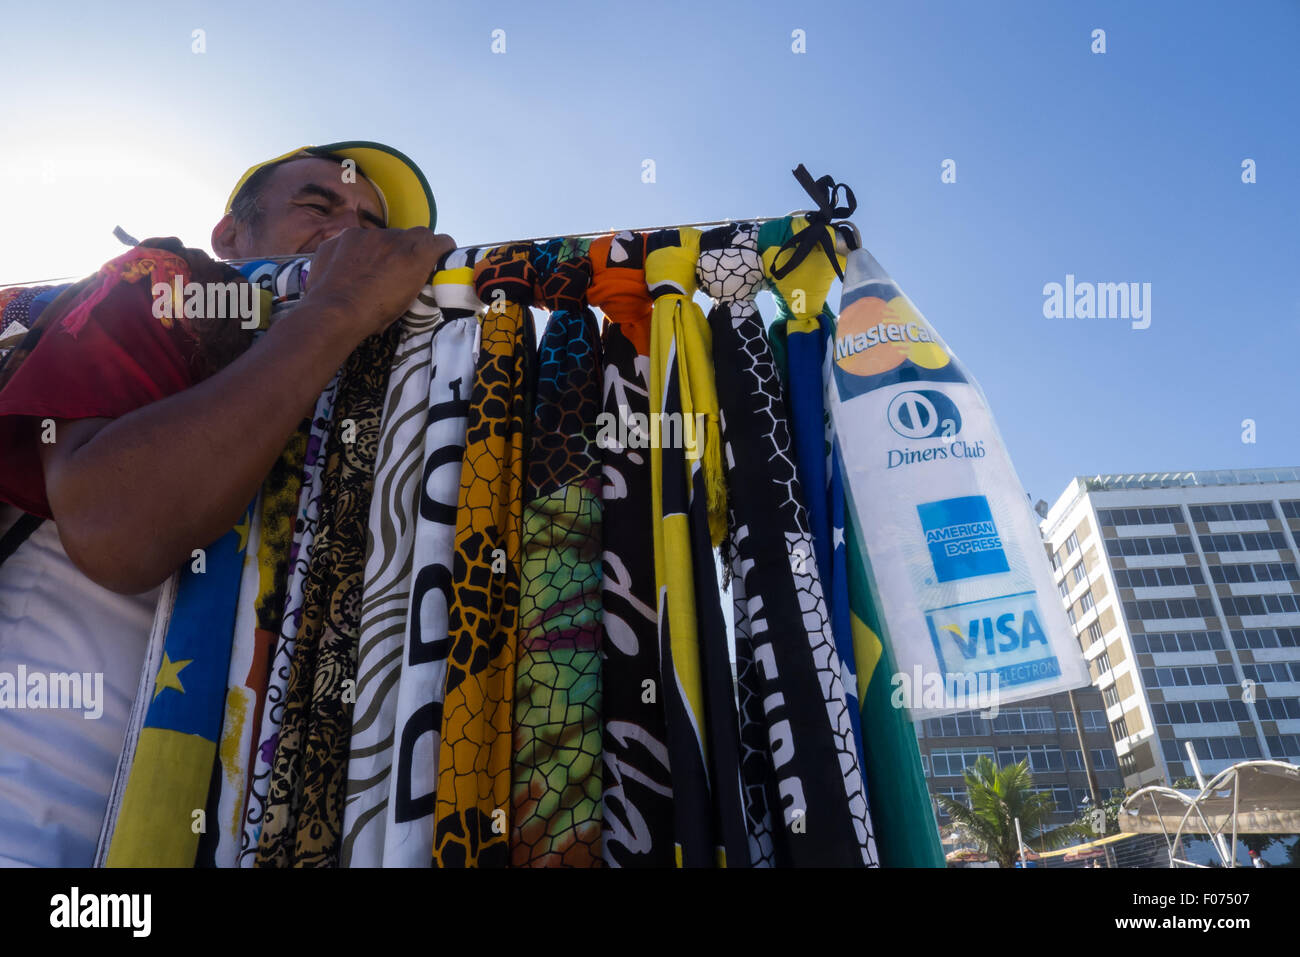 Rio de Janeiro, Brazil. Beach vendor with sarongs and credit card sign. Stock Photo